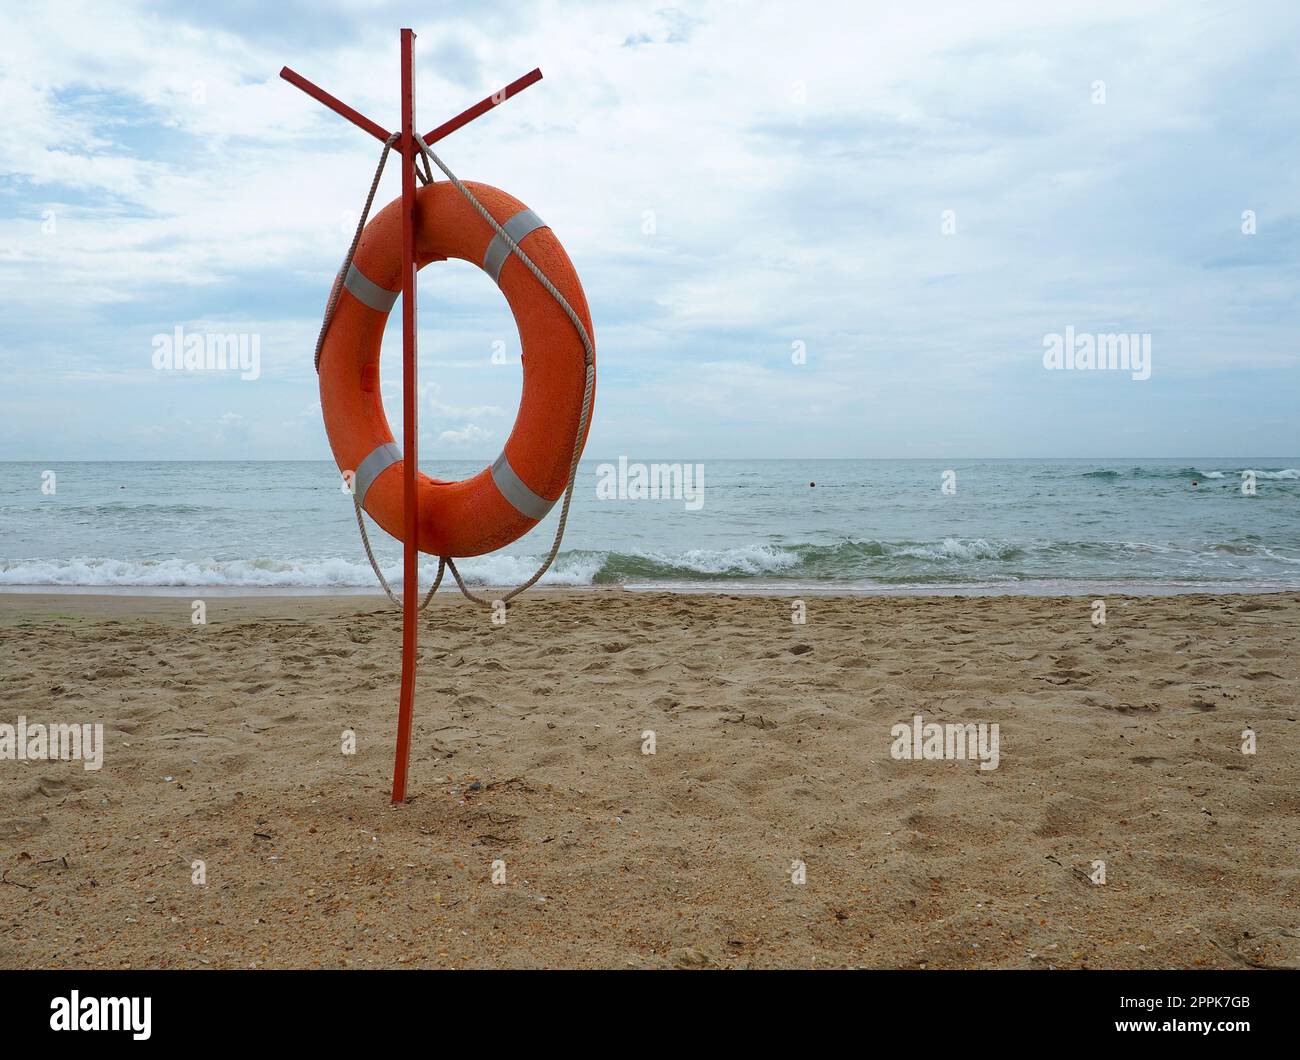 Bouée de sauvetage sur une plage de sable. Cercle orange sur un poteau pour sauver les personnes noyées dans la mer. Point de sauvetage sur le rivage. Ciel et mer en arrière-plan. Banque D'Images